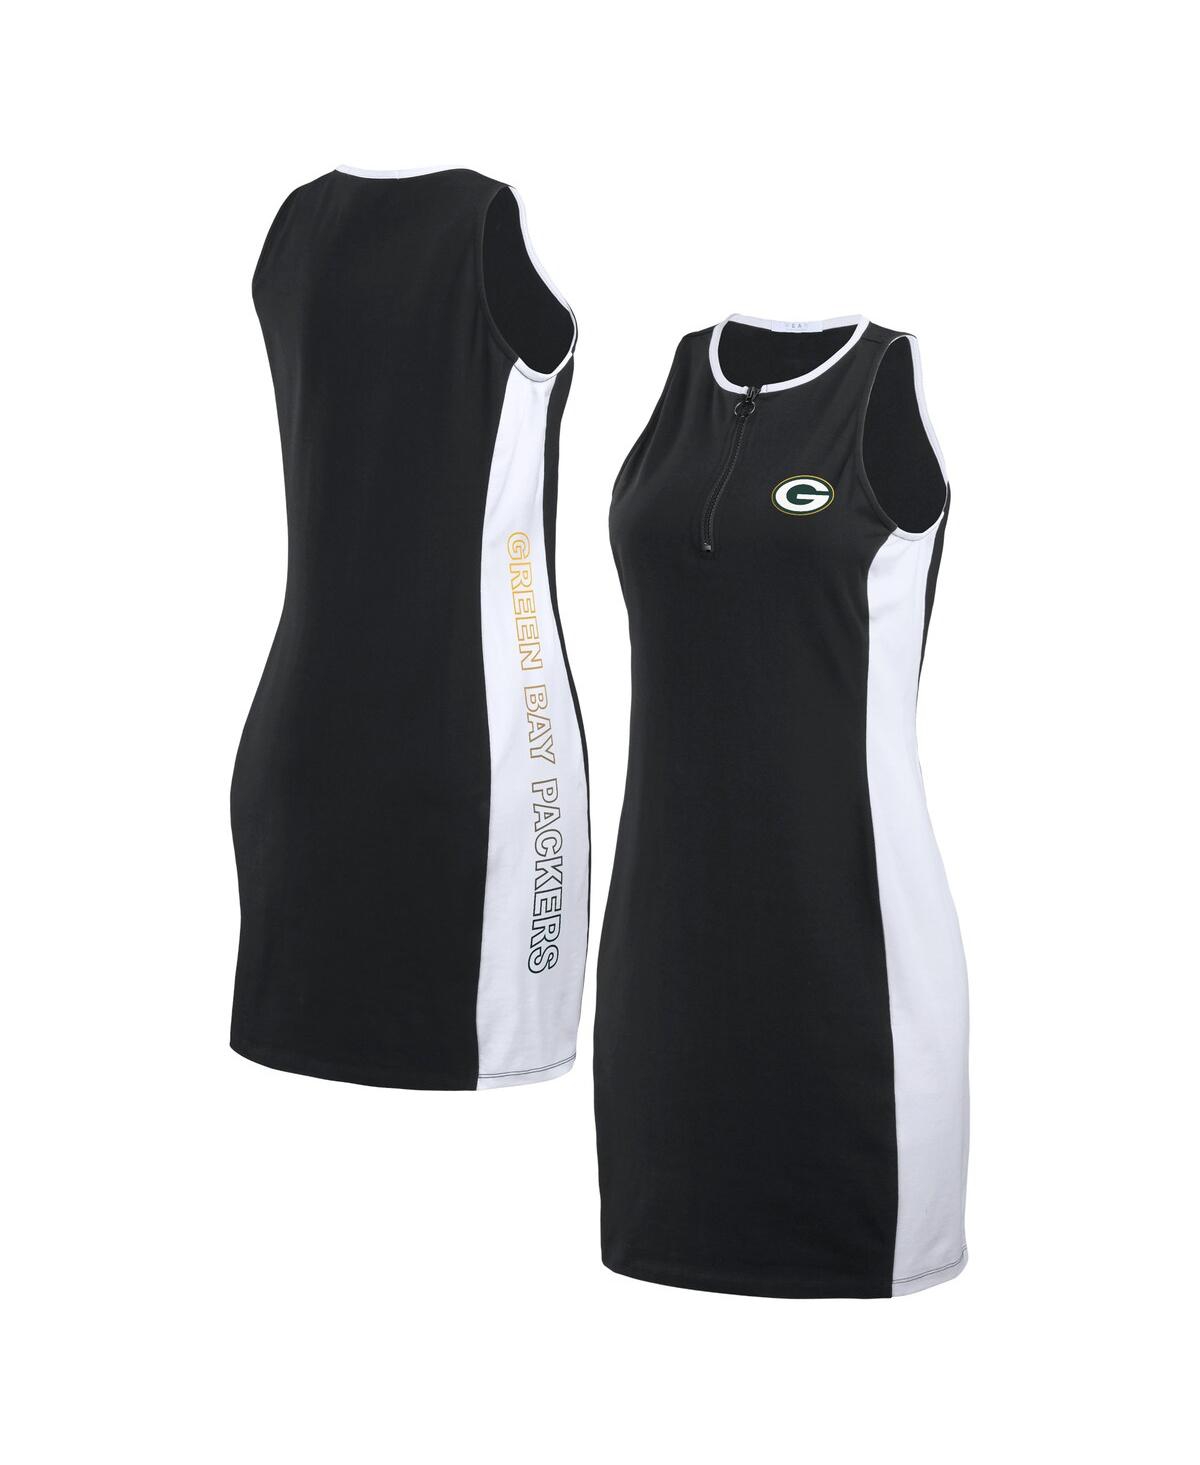 Women's Wear by Erin Andrews Black Green Bay Packers Bodyframing Tank Dress - Black